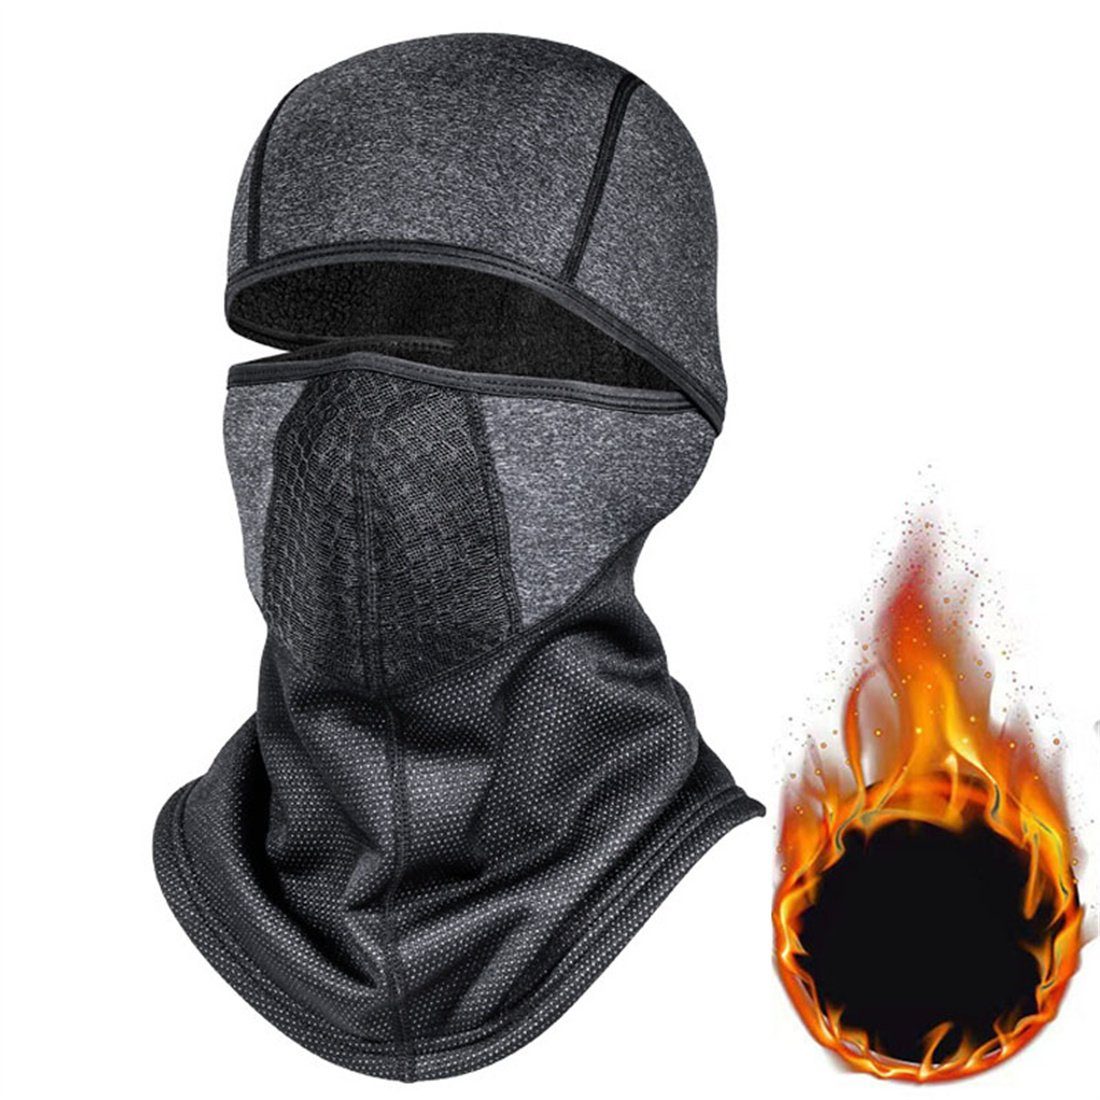 Outdoor-Radfahren unisex Kopfbedeckung, Halsschutz dunkelgrau Sturmhaube Winter-Ski-Maske, DÖRÖY